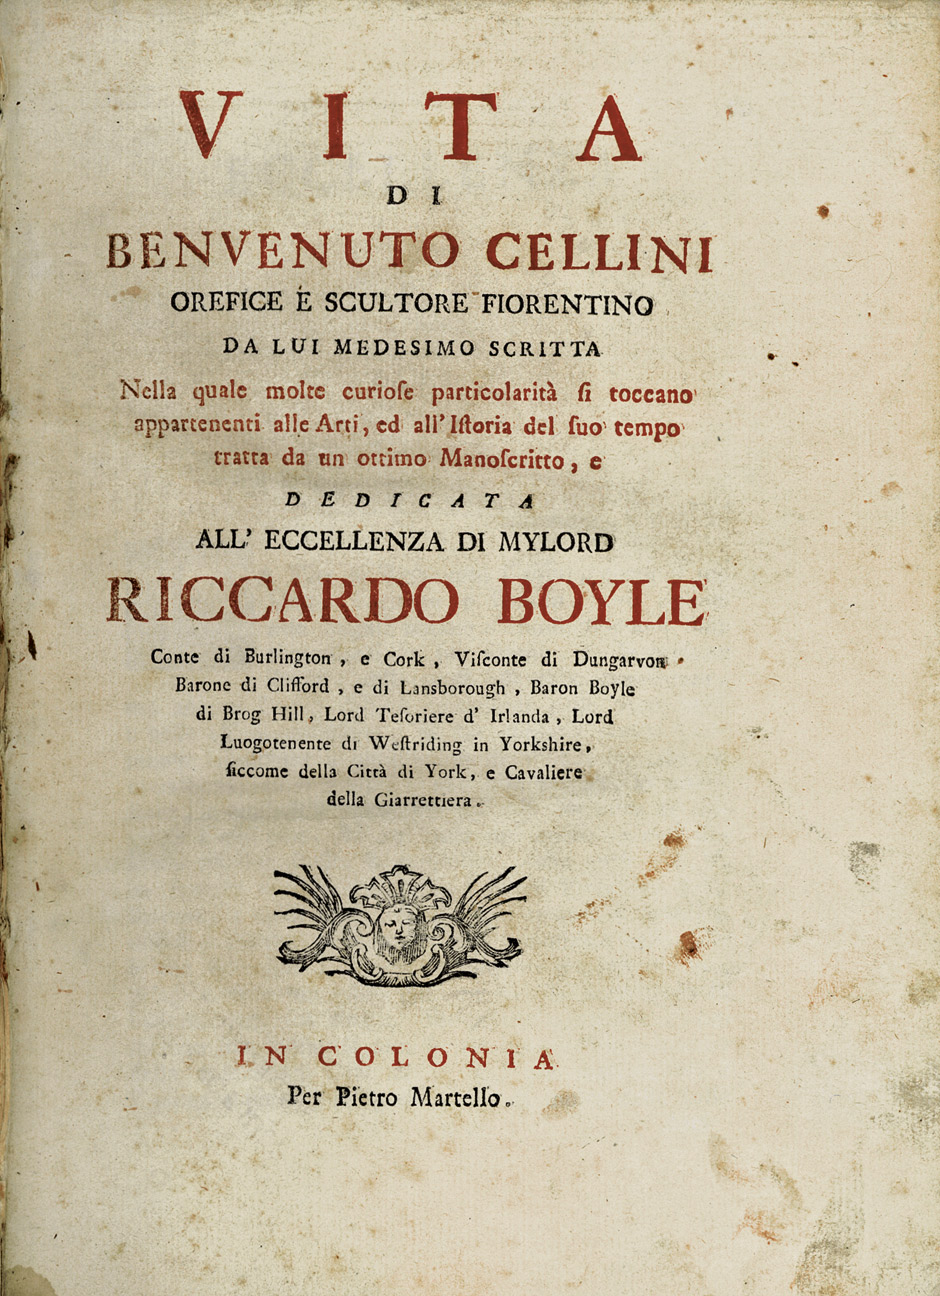 Lot 1352, Auction  115, Cellini, Benvenuto, Vita di Benvenuto Cellini (Nachdruck)